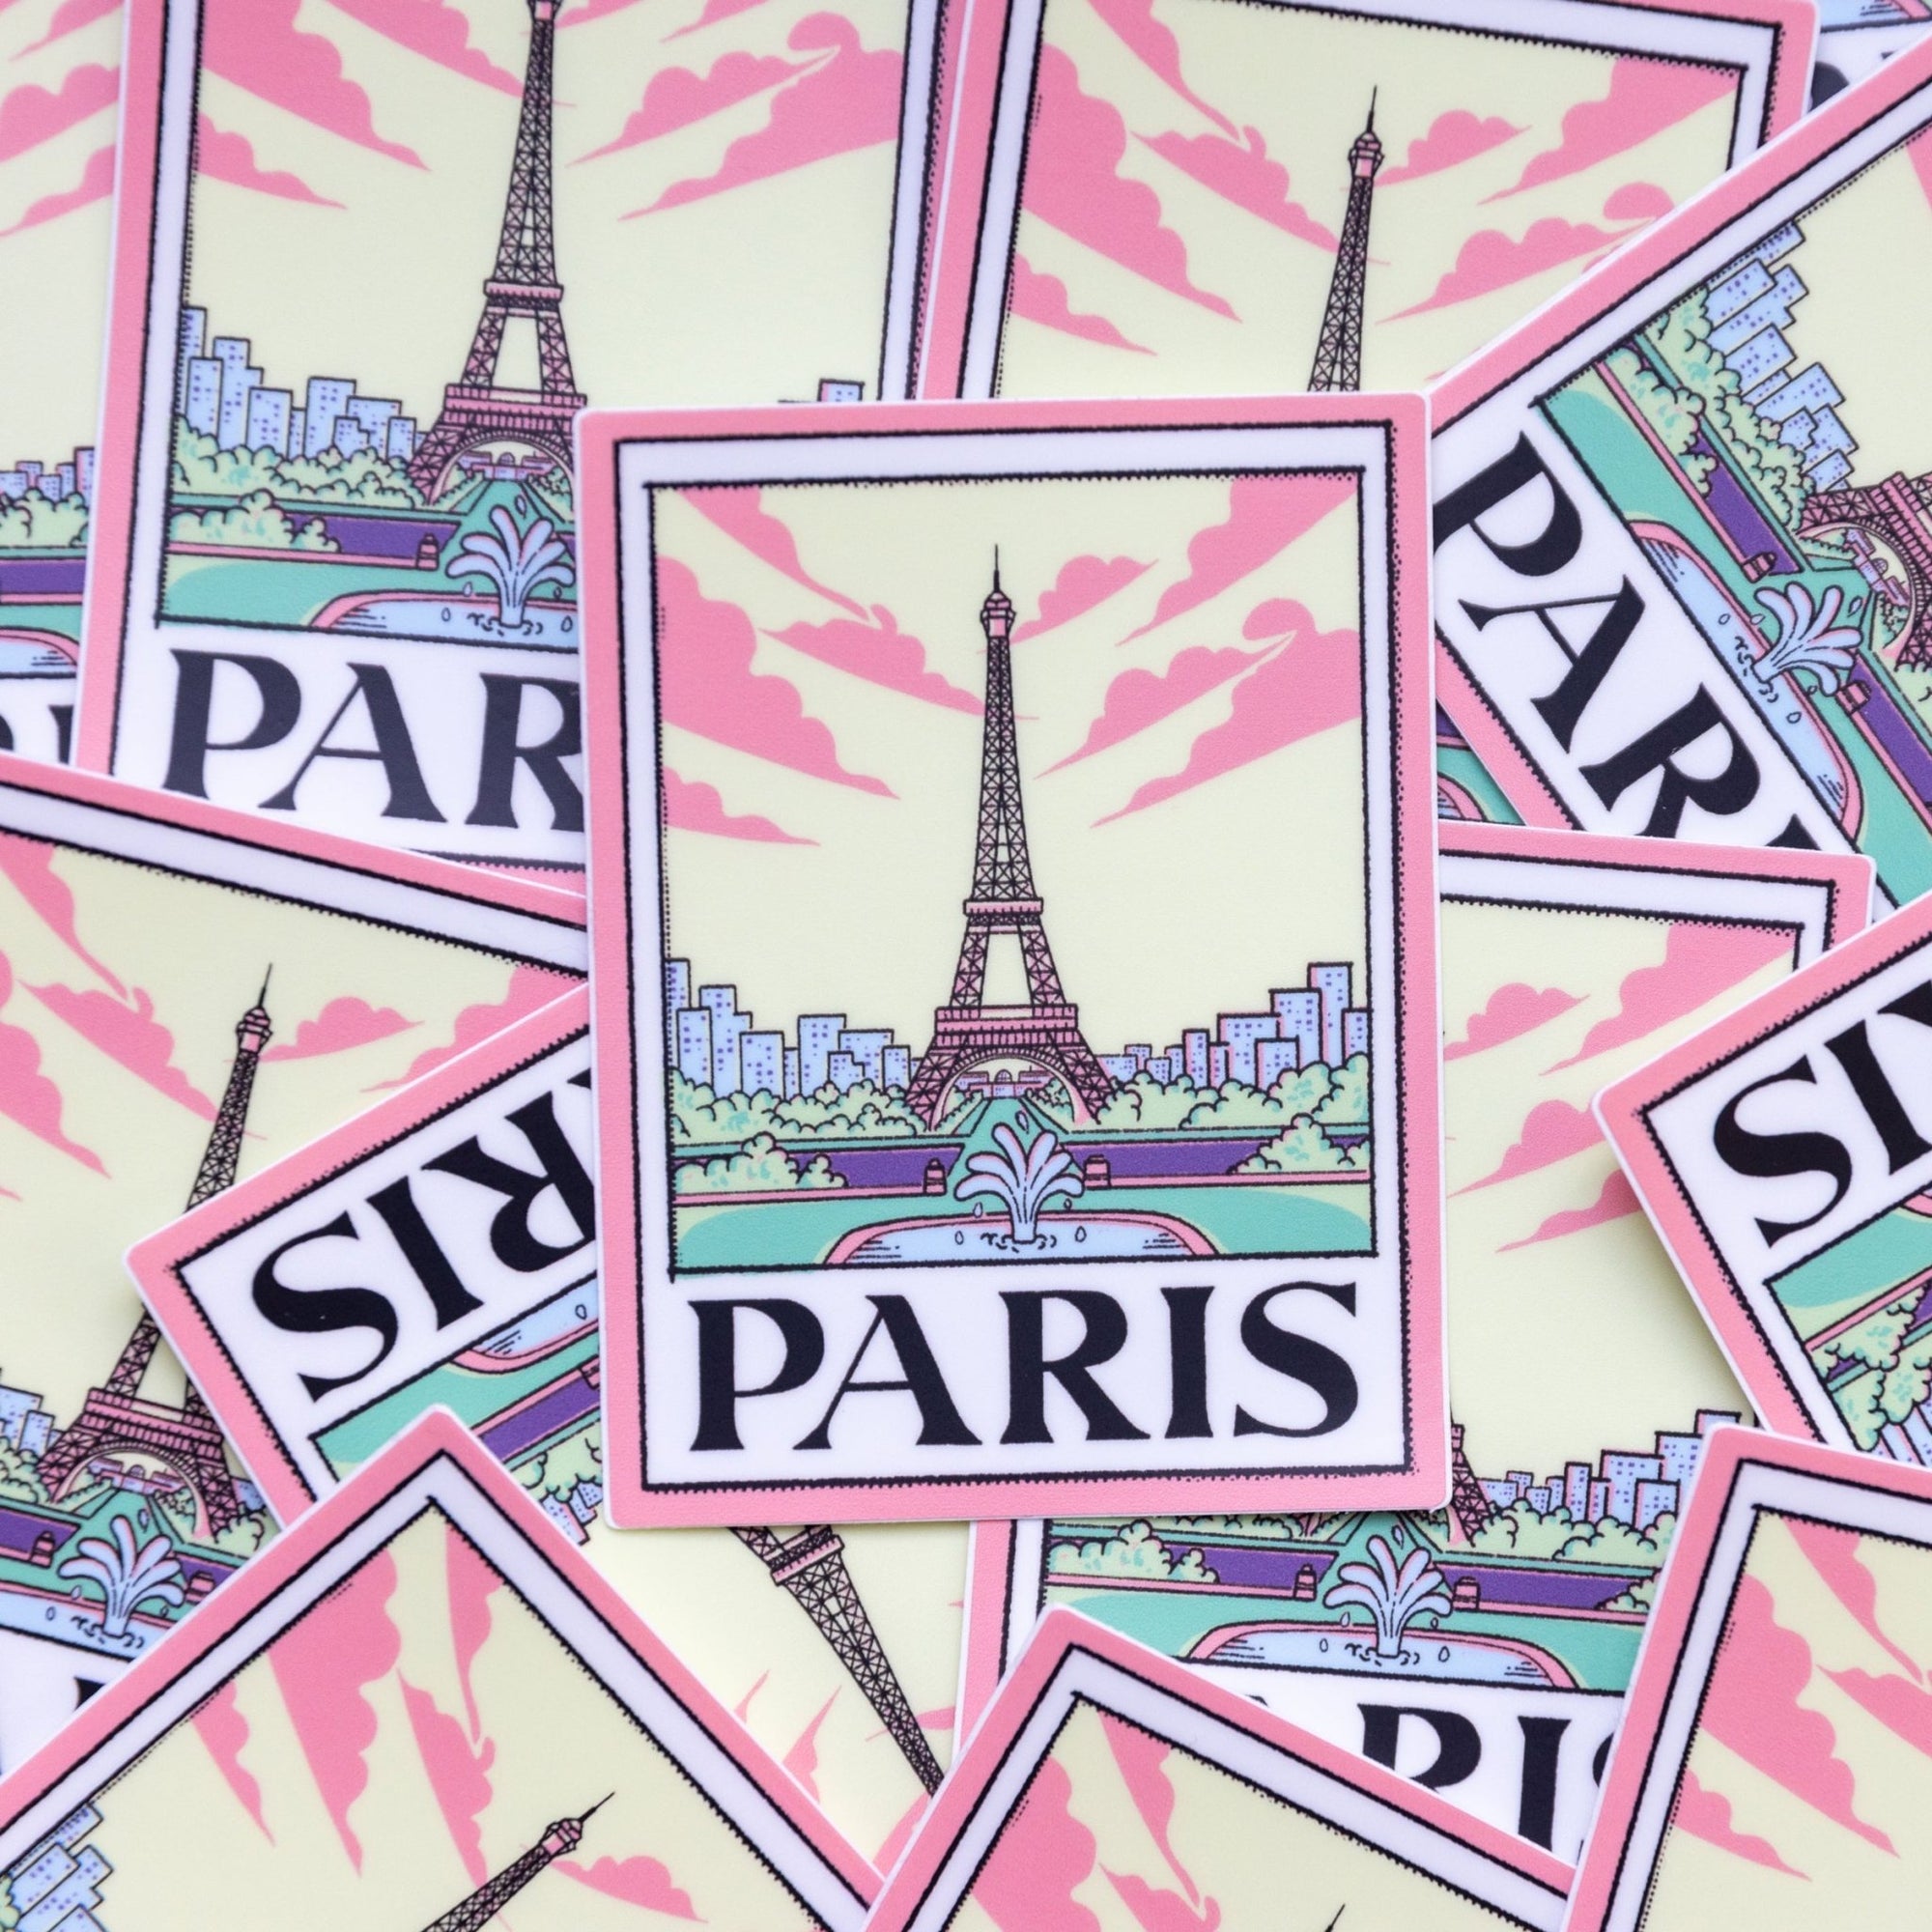 A Paris Picture - menottees